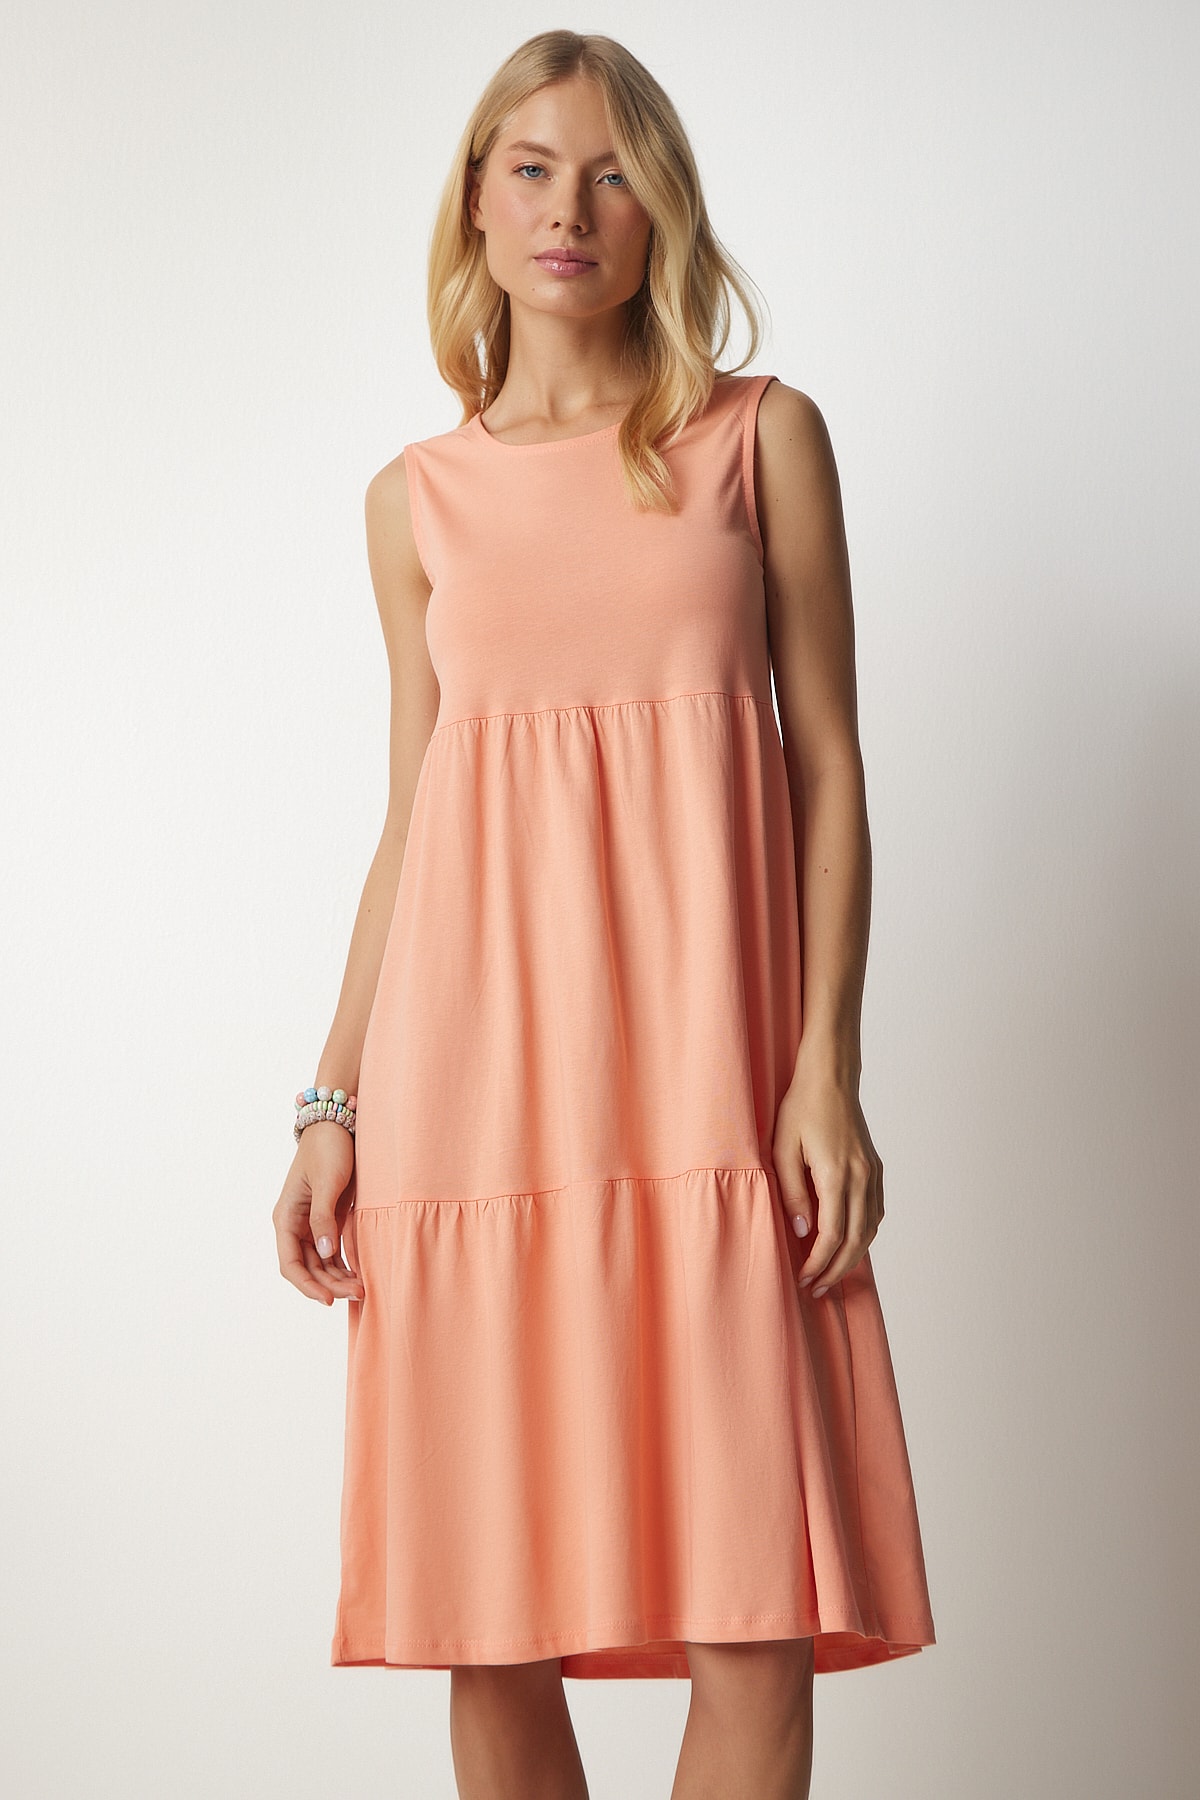 цена Женское трикотажное платье без рукавов с воланами лососевого цвета Happiness İstanbul, розовый